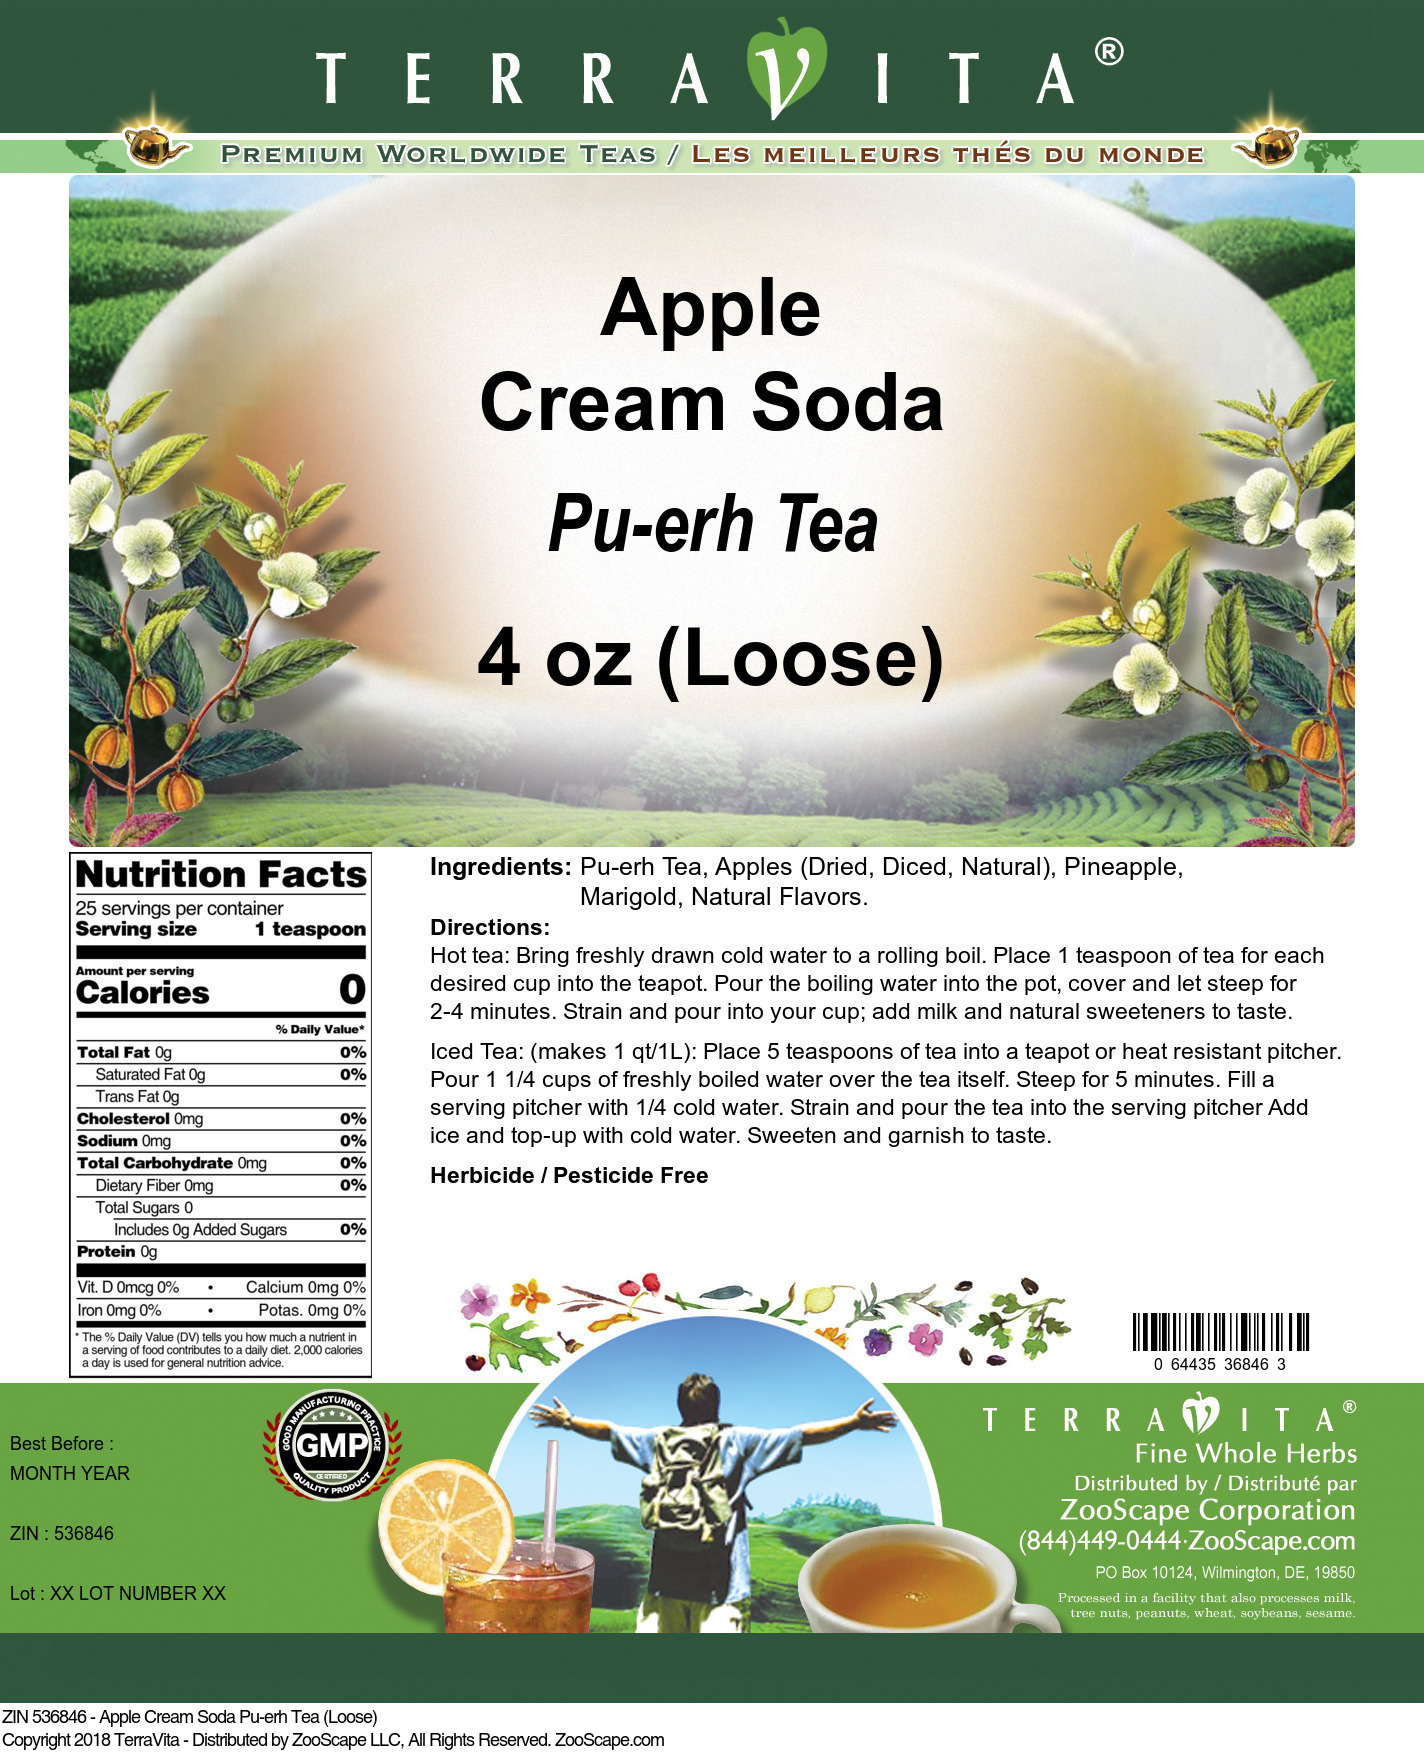 Apple Cream Soda Pu-erh Tea (Loose) - Label